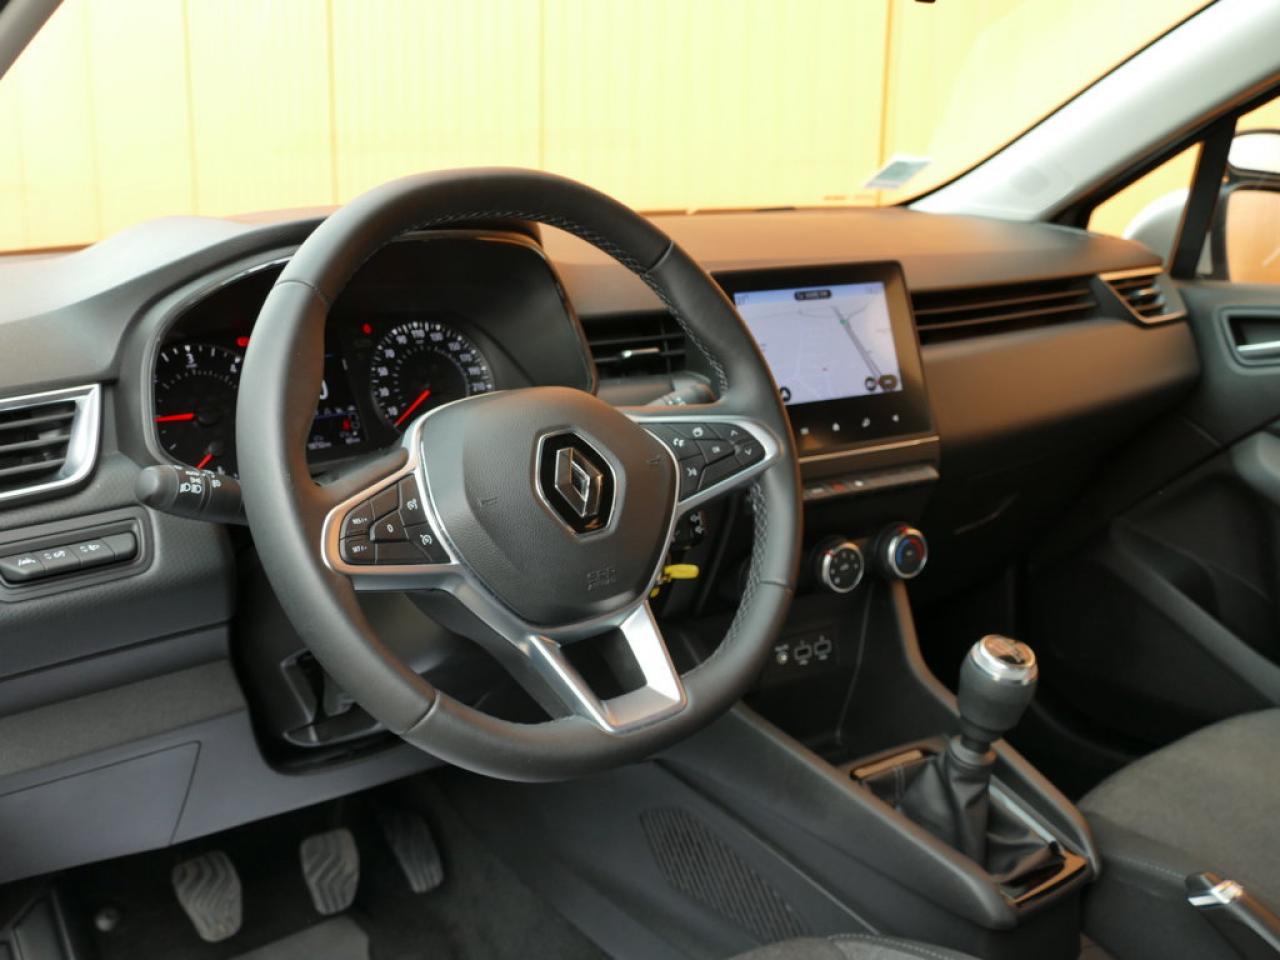 2022 Renault CLIO